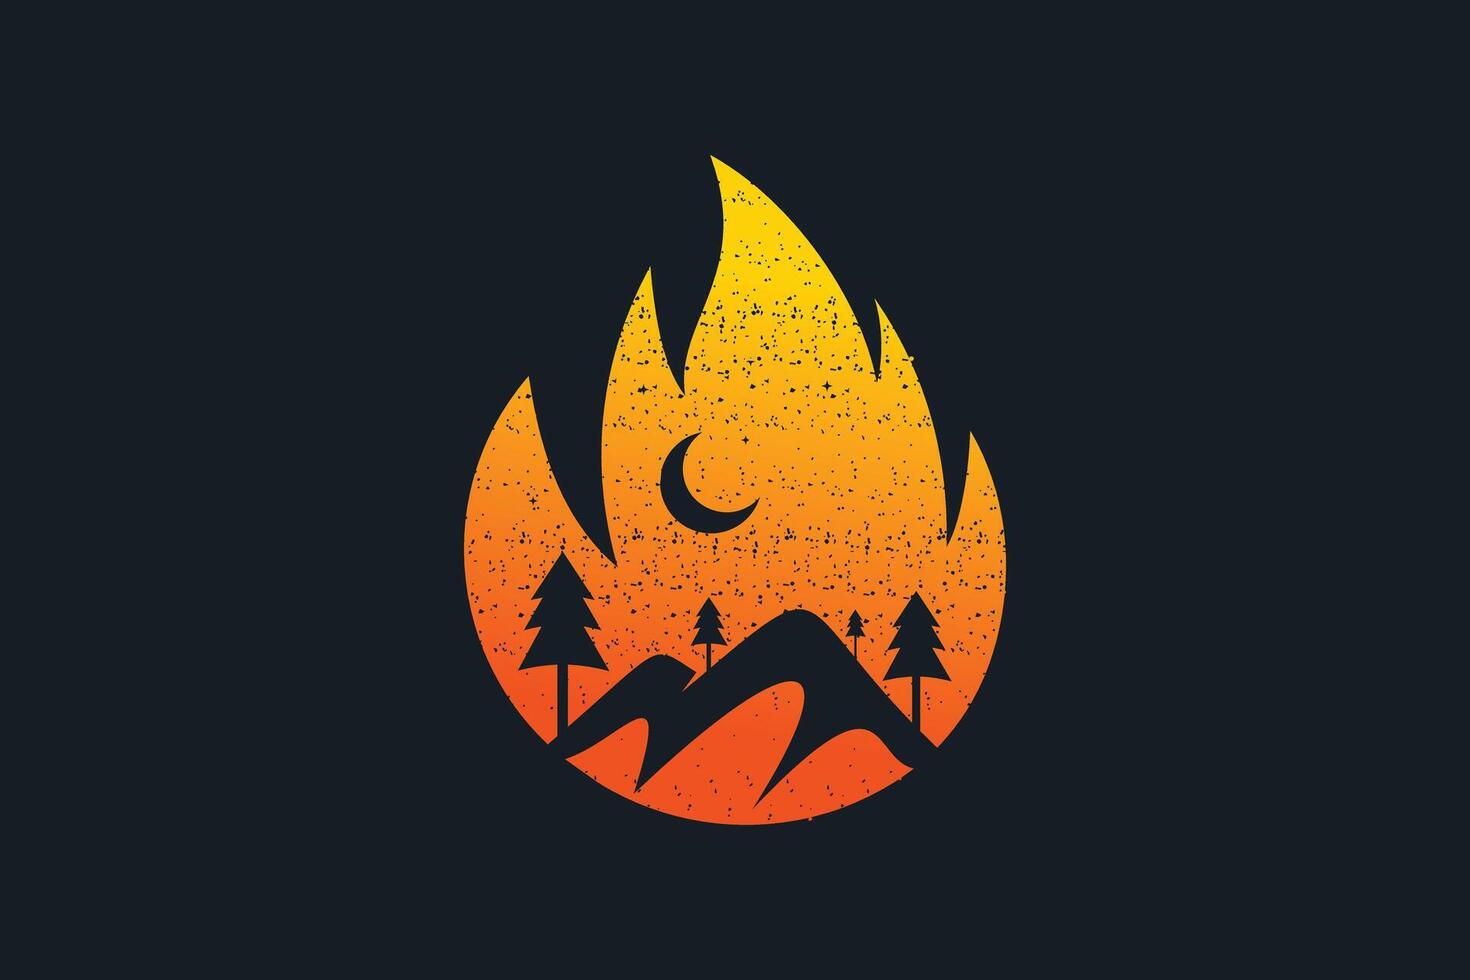 Fire mountain logo design creative concept simple style vector